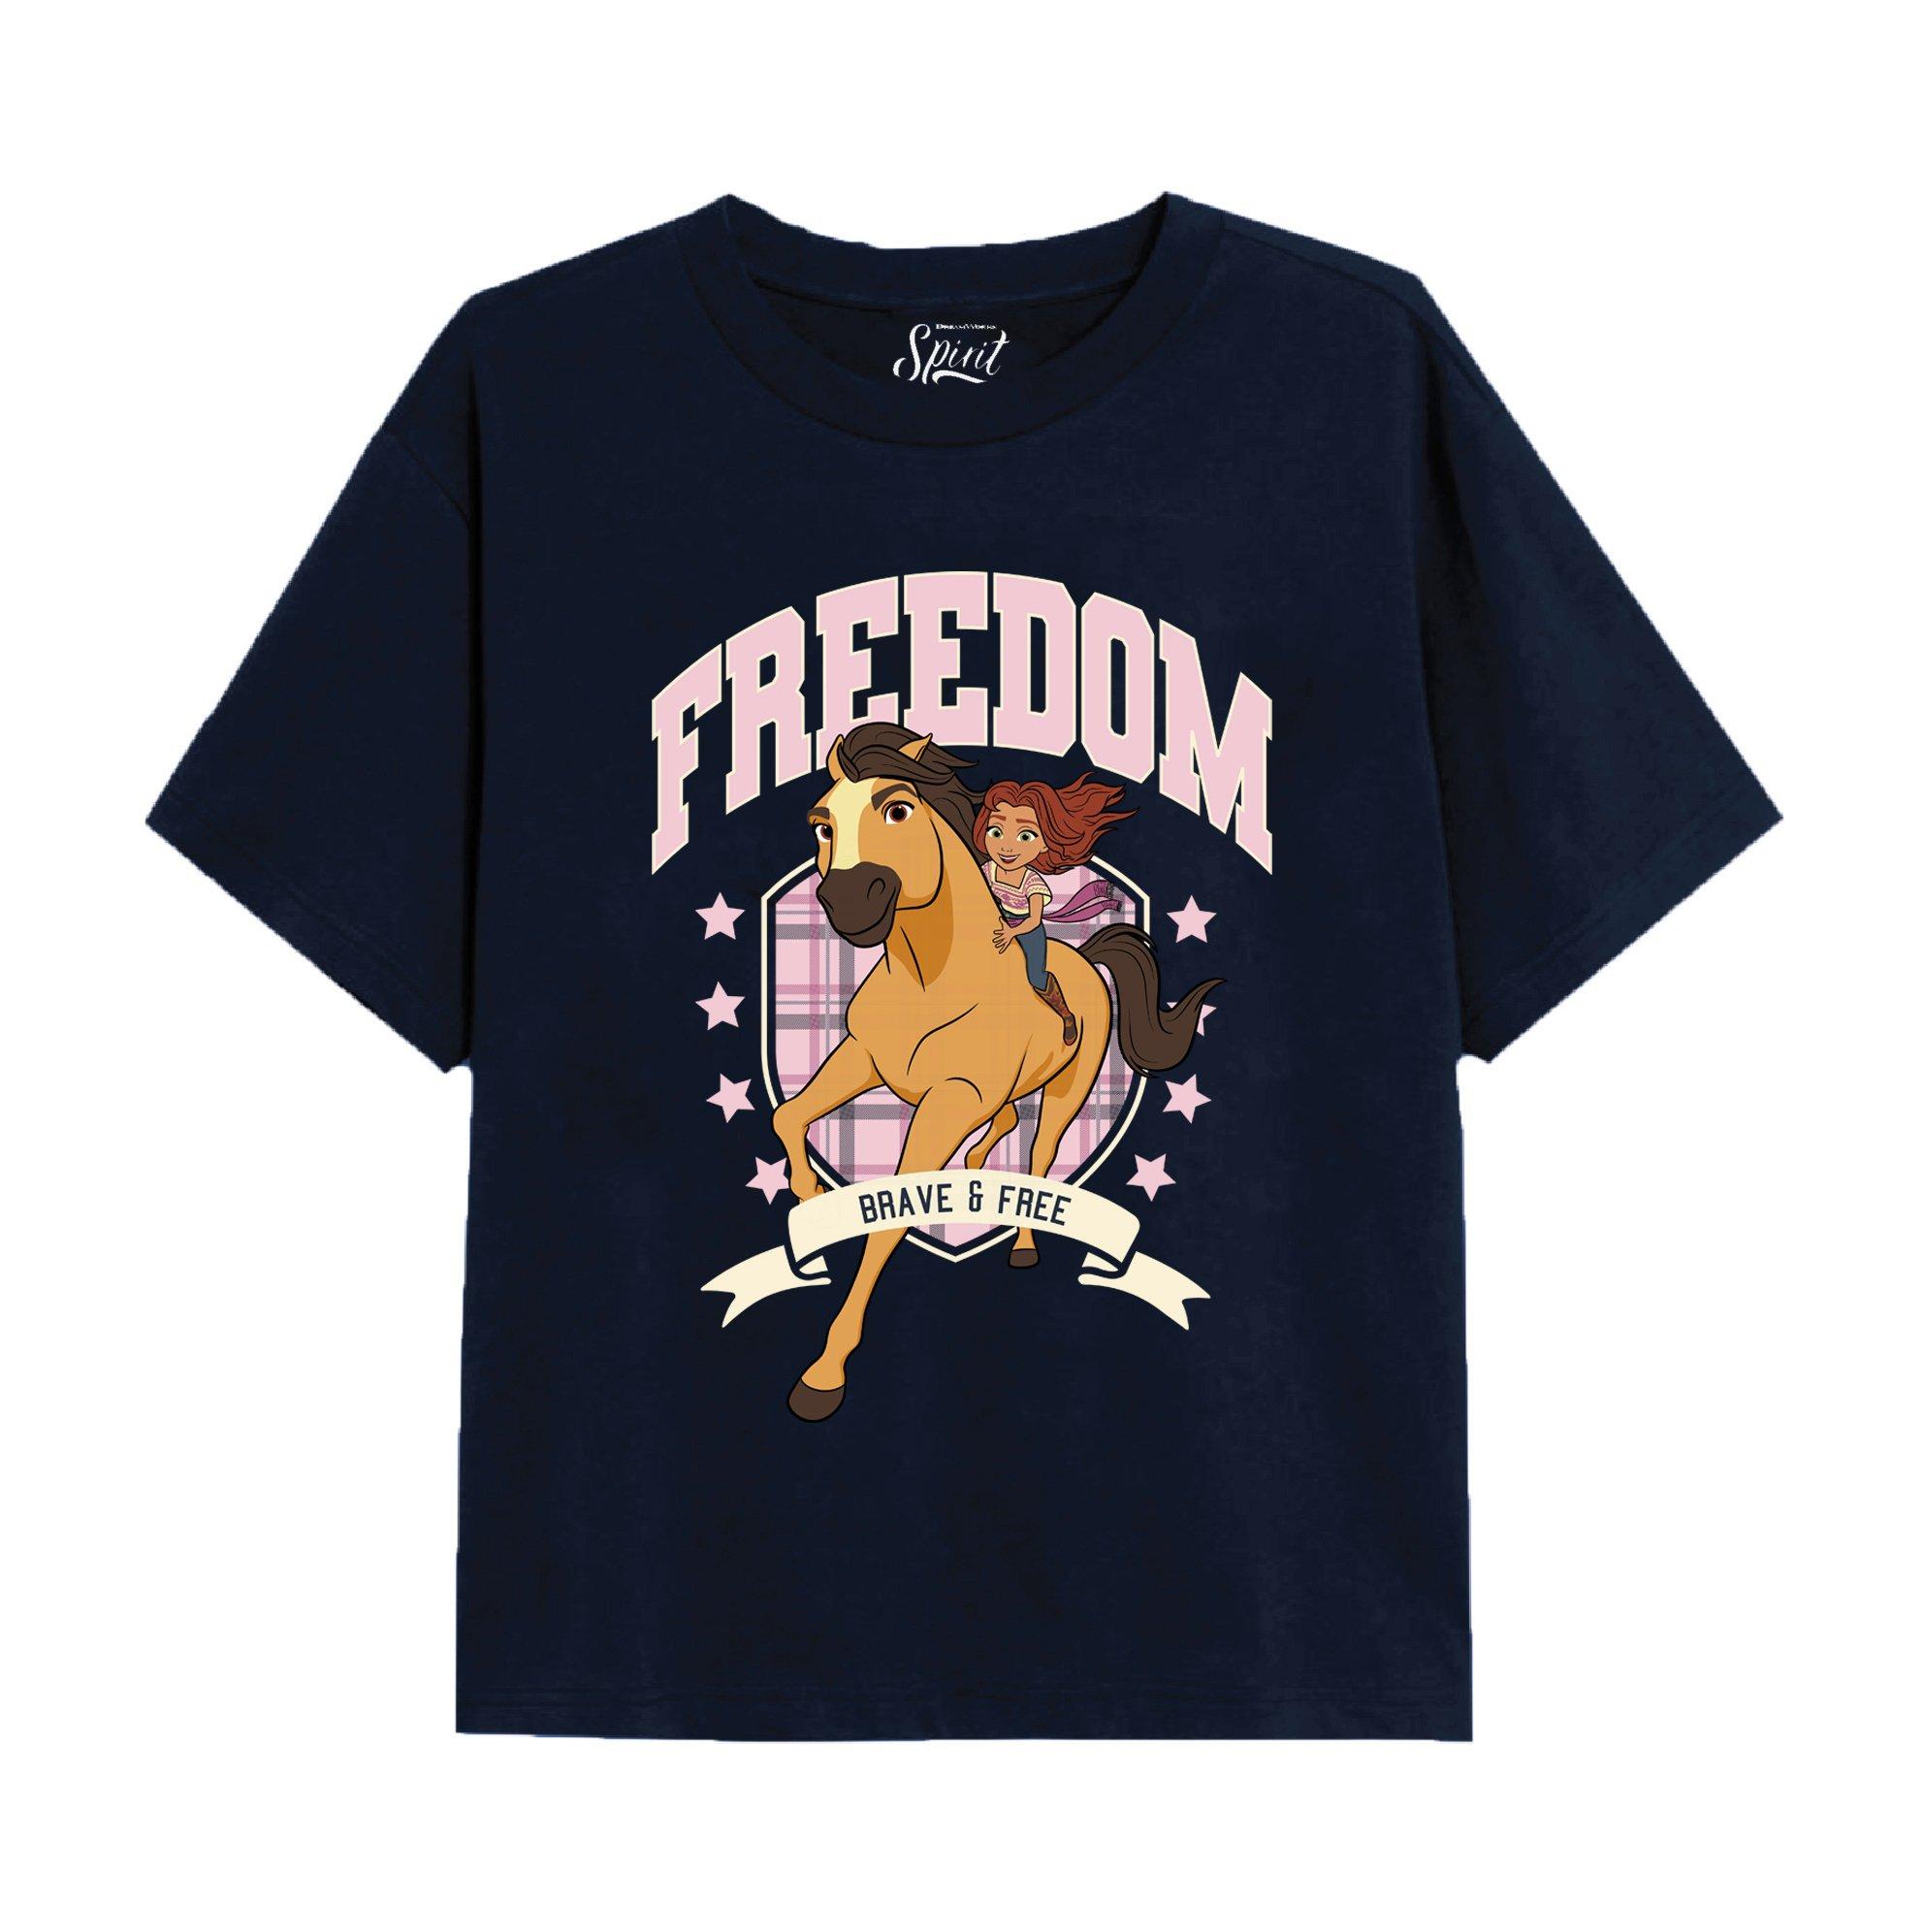 Freedom Varsity T-Shirt